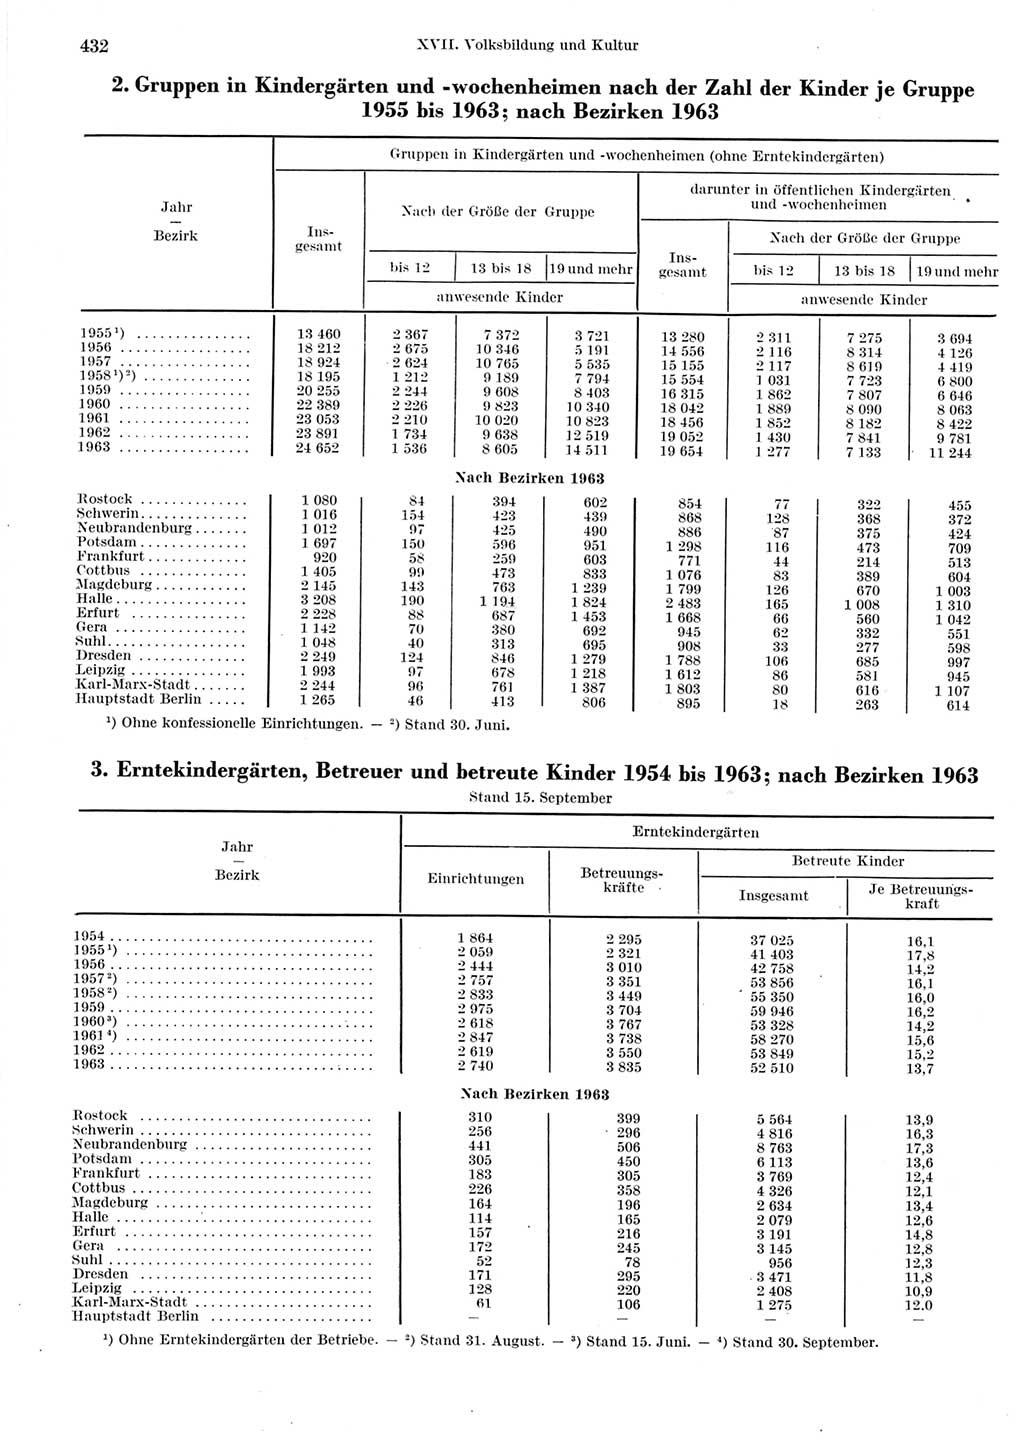 Statistisches Jahrbuch der Deutschen Demokratischen Republik (DDR) 1964, Seite 432 (Stat. Jb. DDR 1964, S. 432)